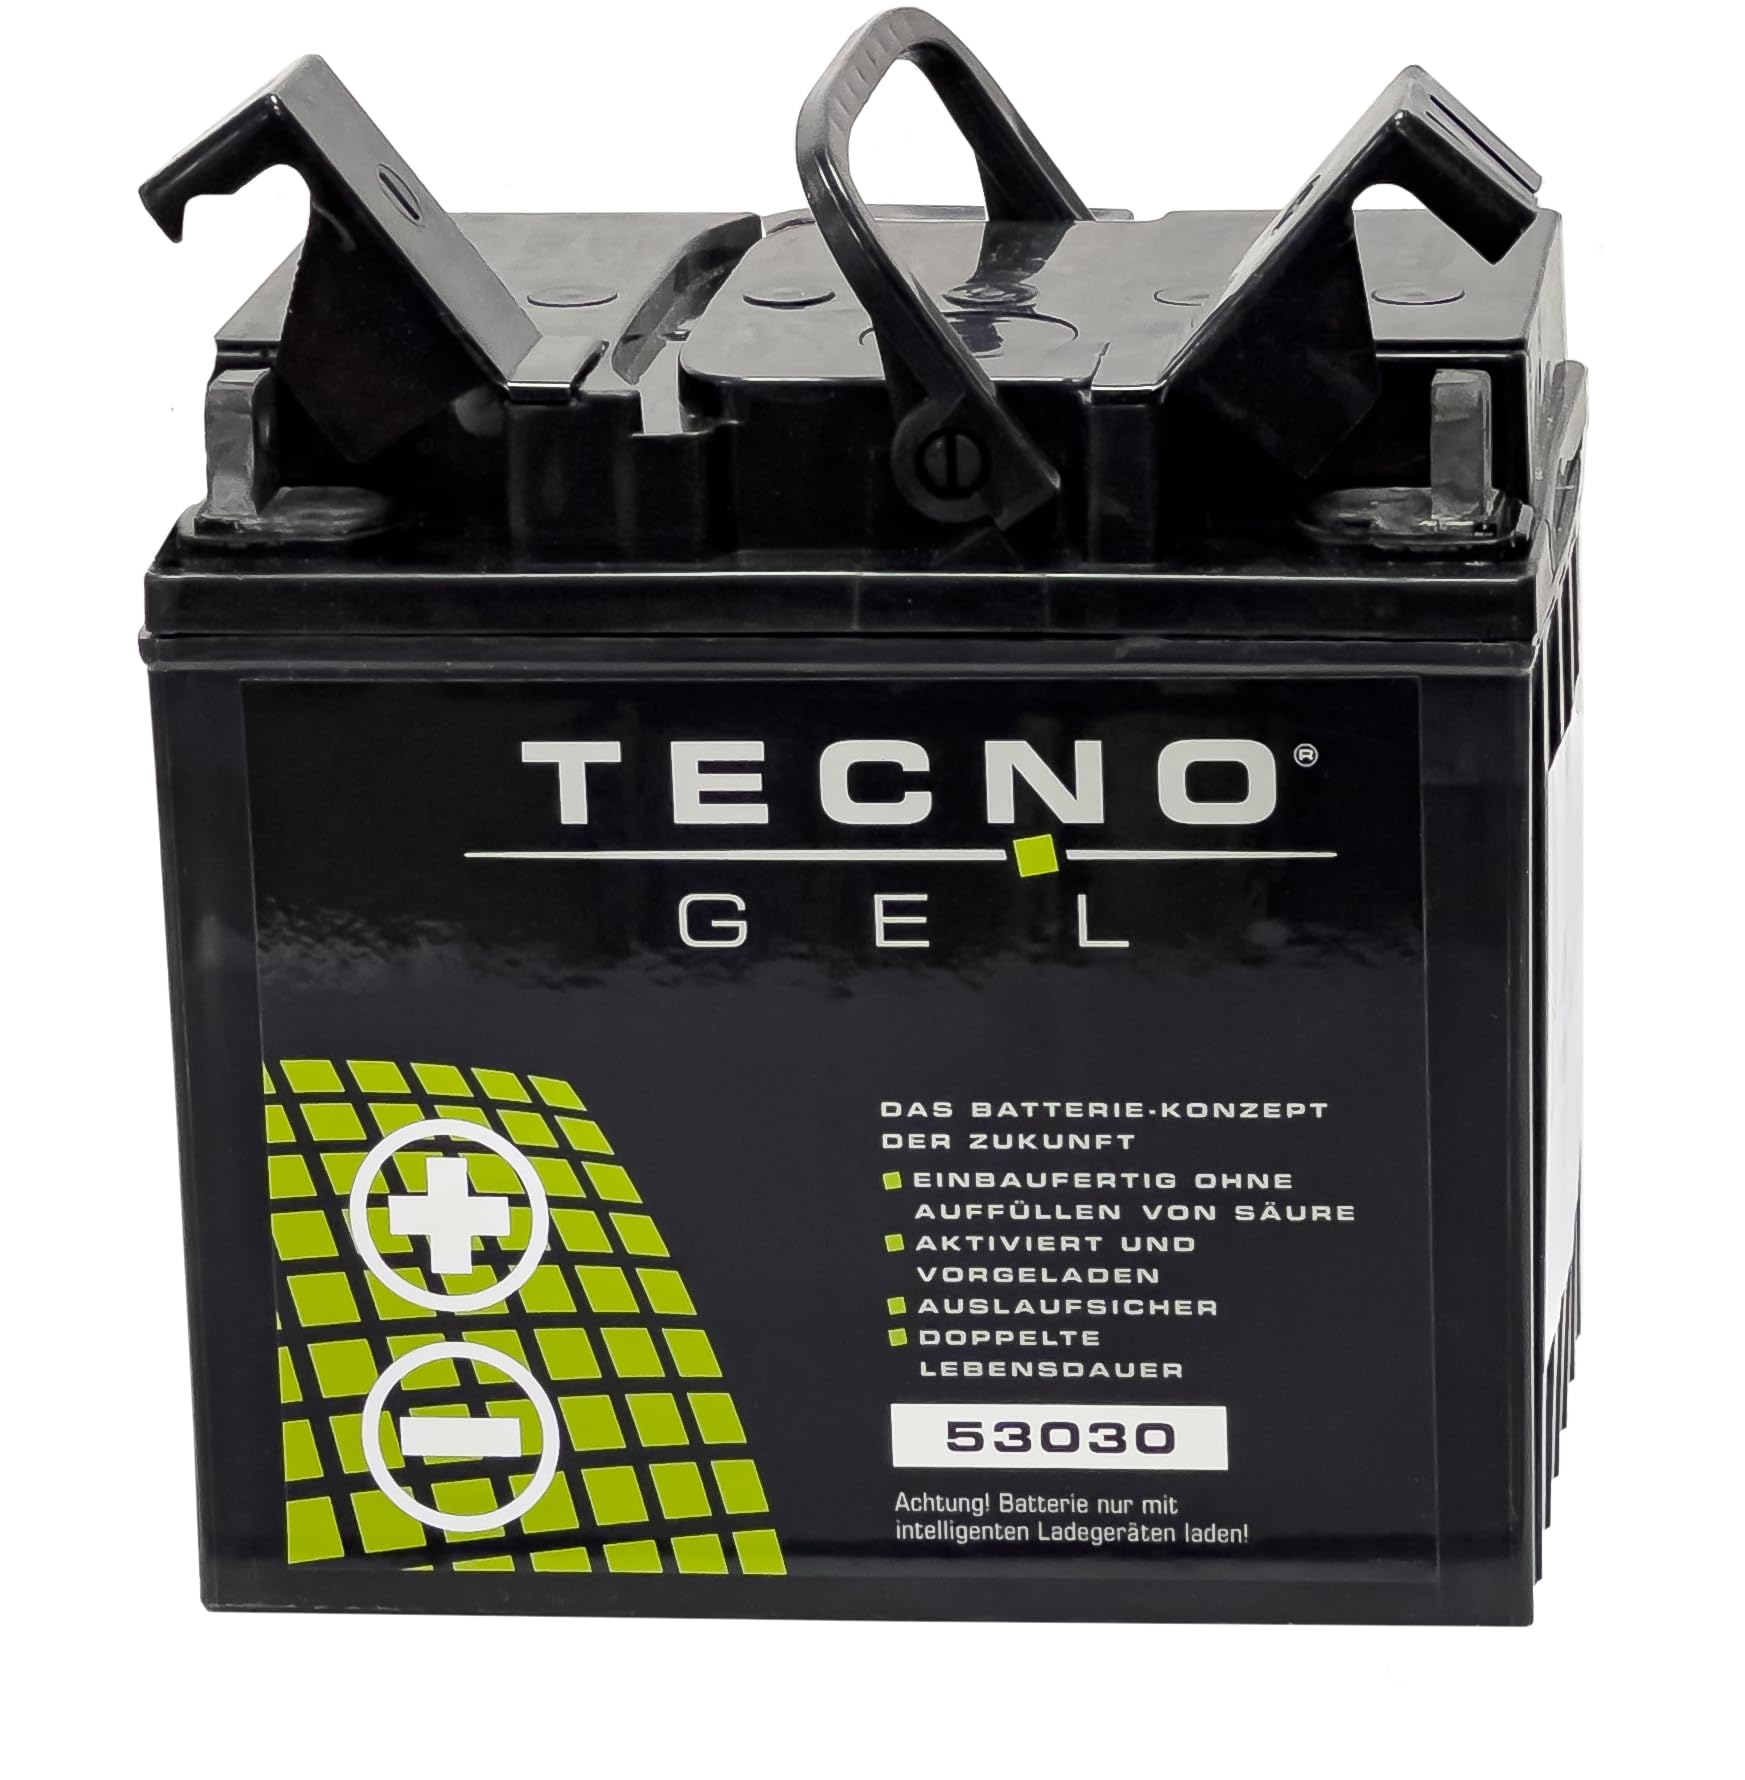 TECNO-GEL Motorrad Qualitäts Batterie 53030 für MOTO GUZZI Stone 1100 ie, Touring 2002-2005, 12V Gel-Batterie 30Ah, 187x130x170 mm von Wirth-Federn